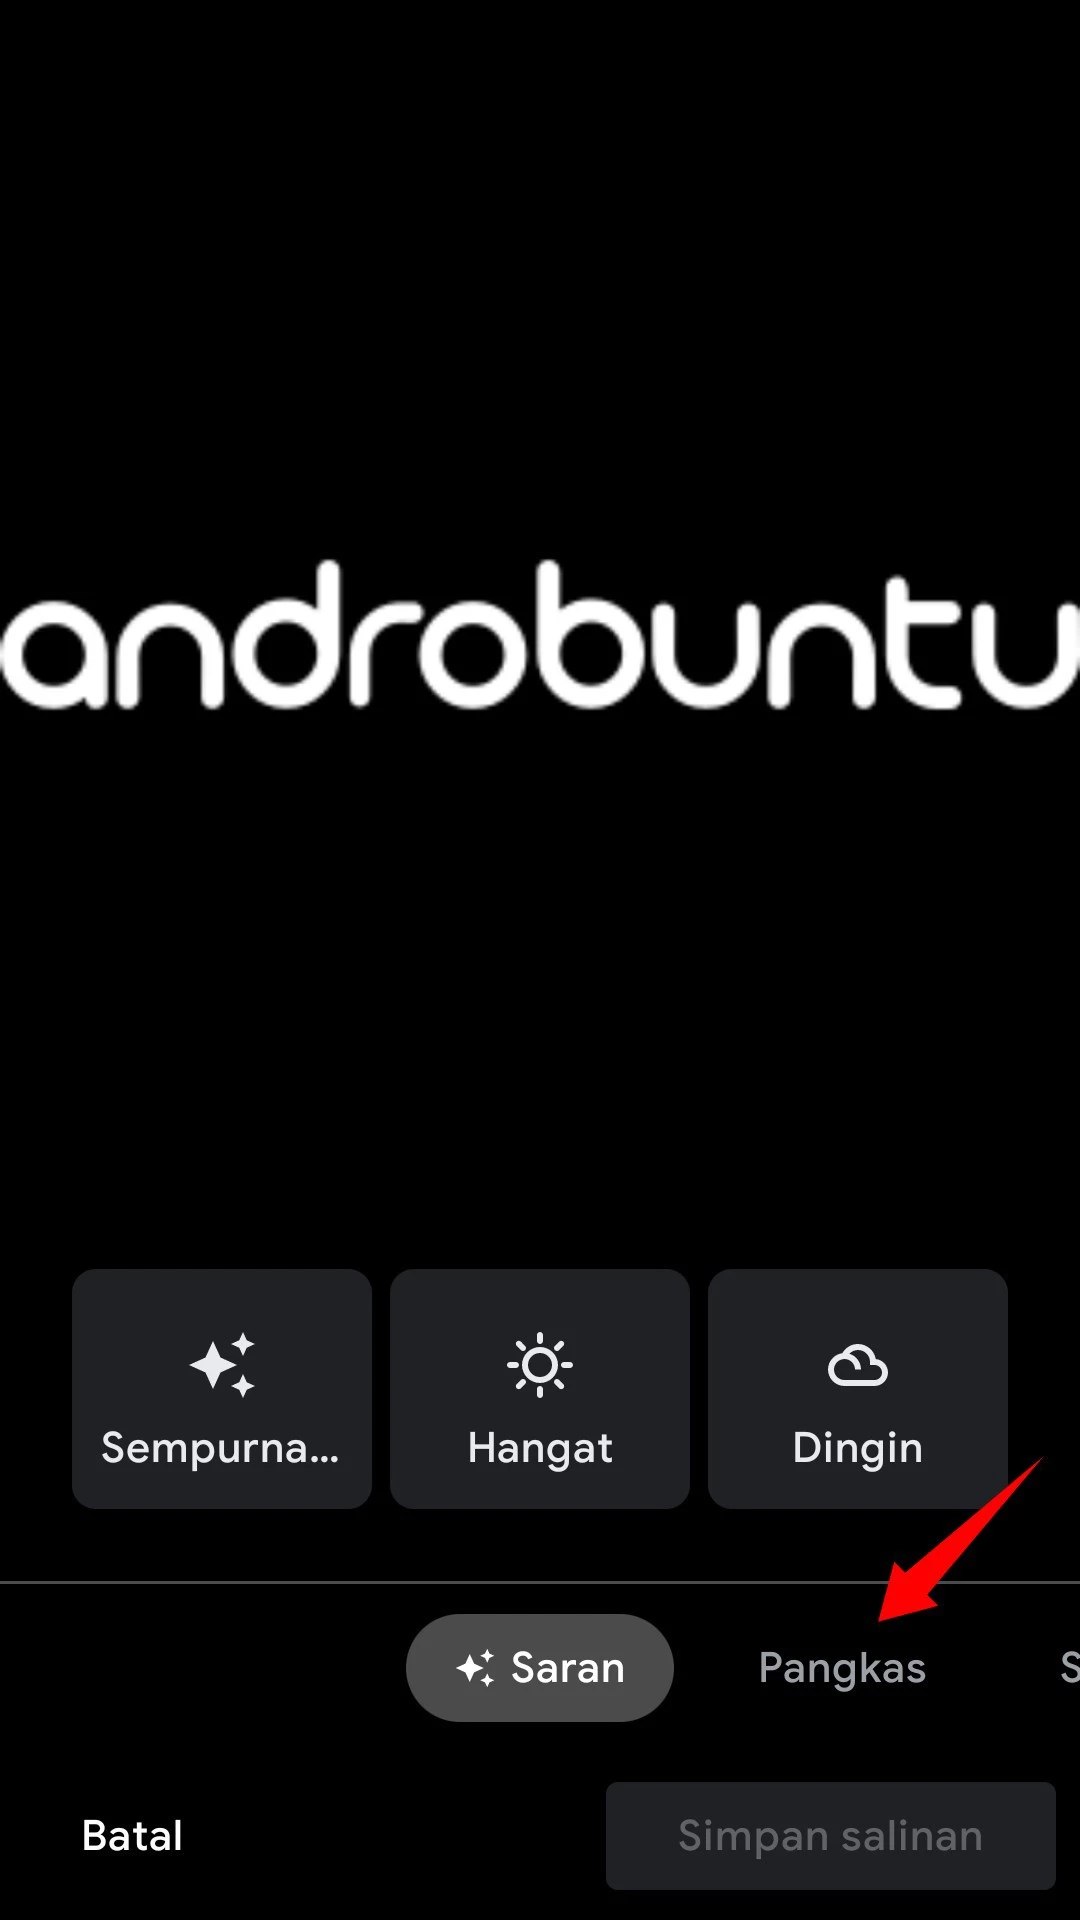 Cara Memutar Foto di Android by Androbuntu 4